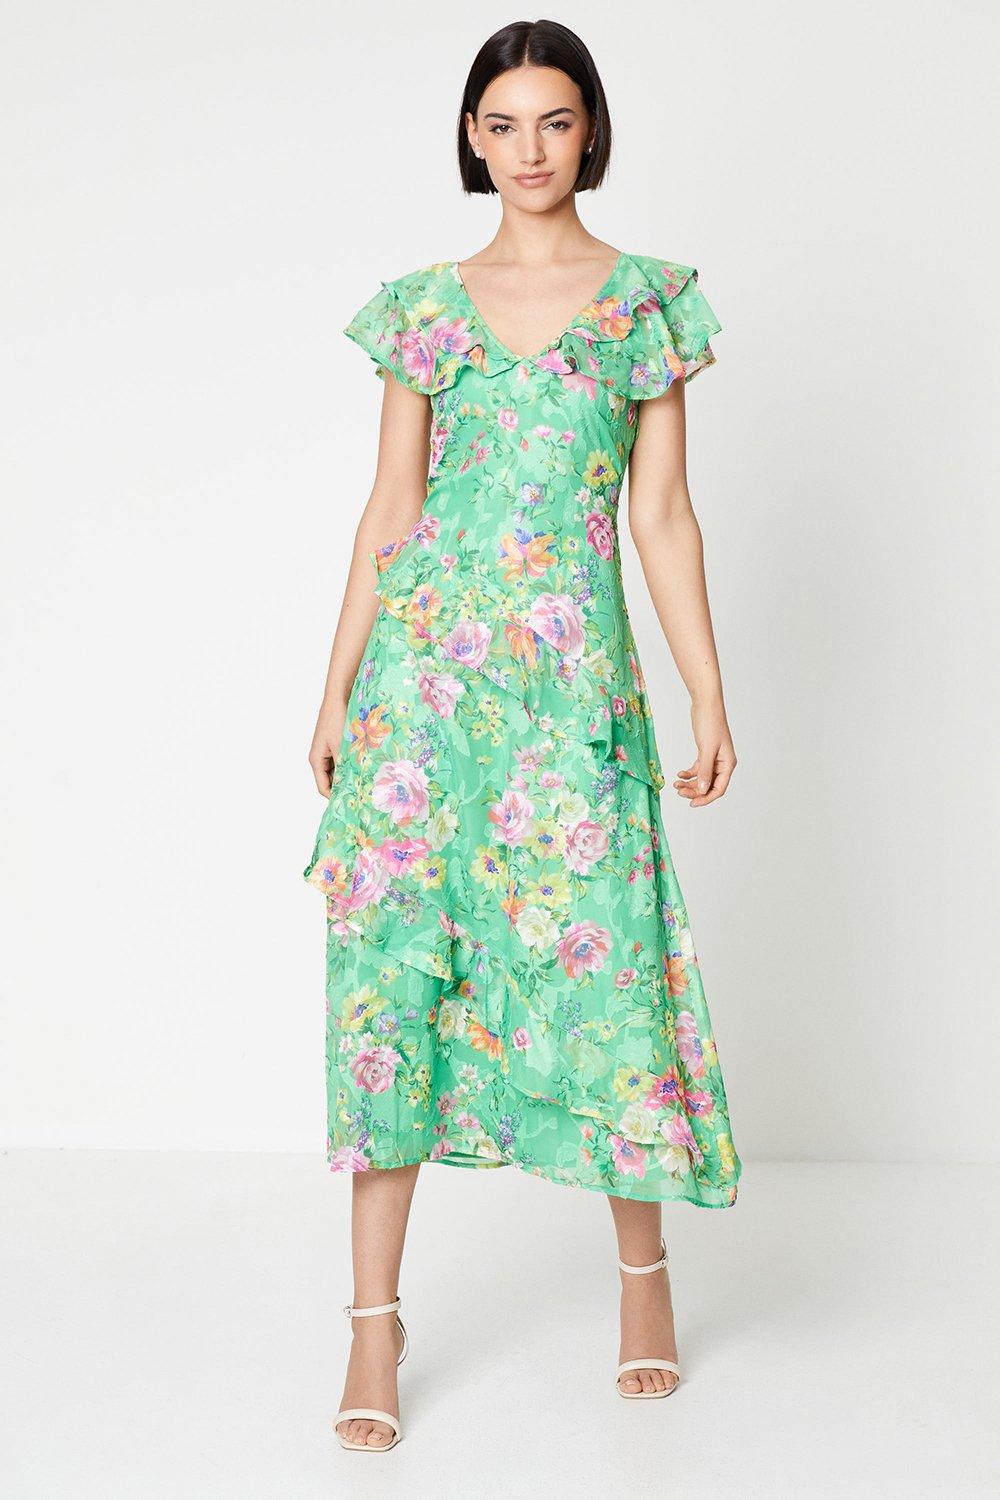 Green Satin Midi Dress - Floral Satin Midi Dress - Brocade Dress